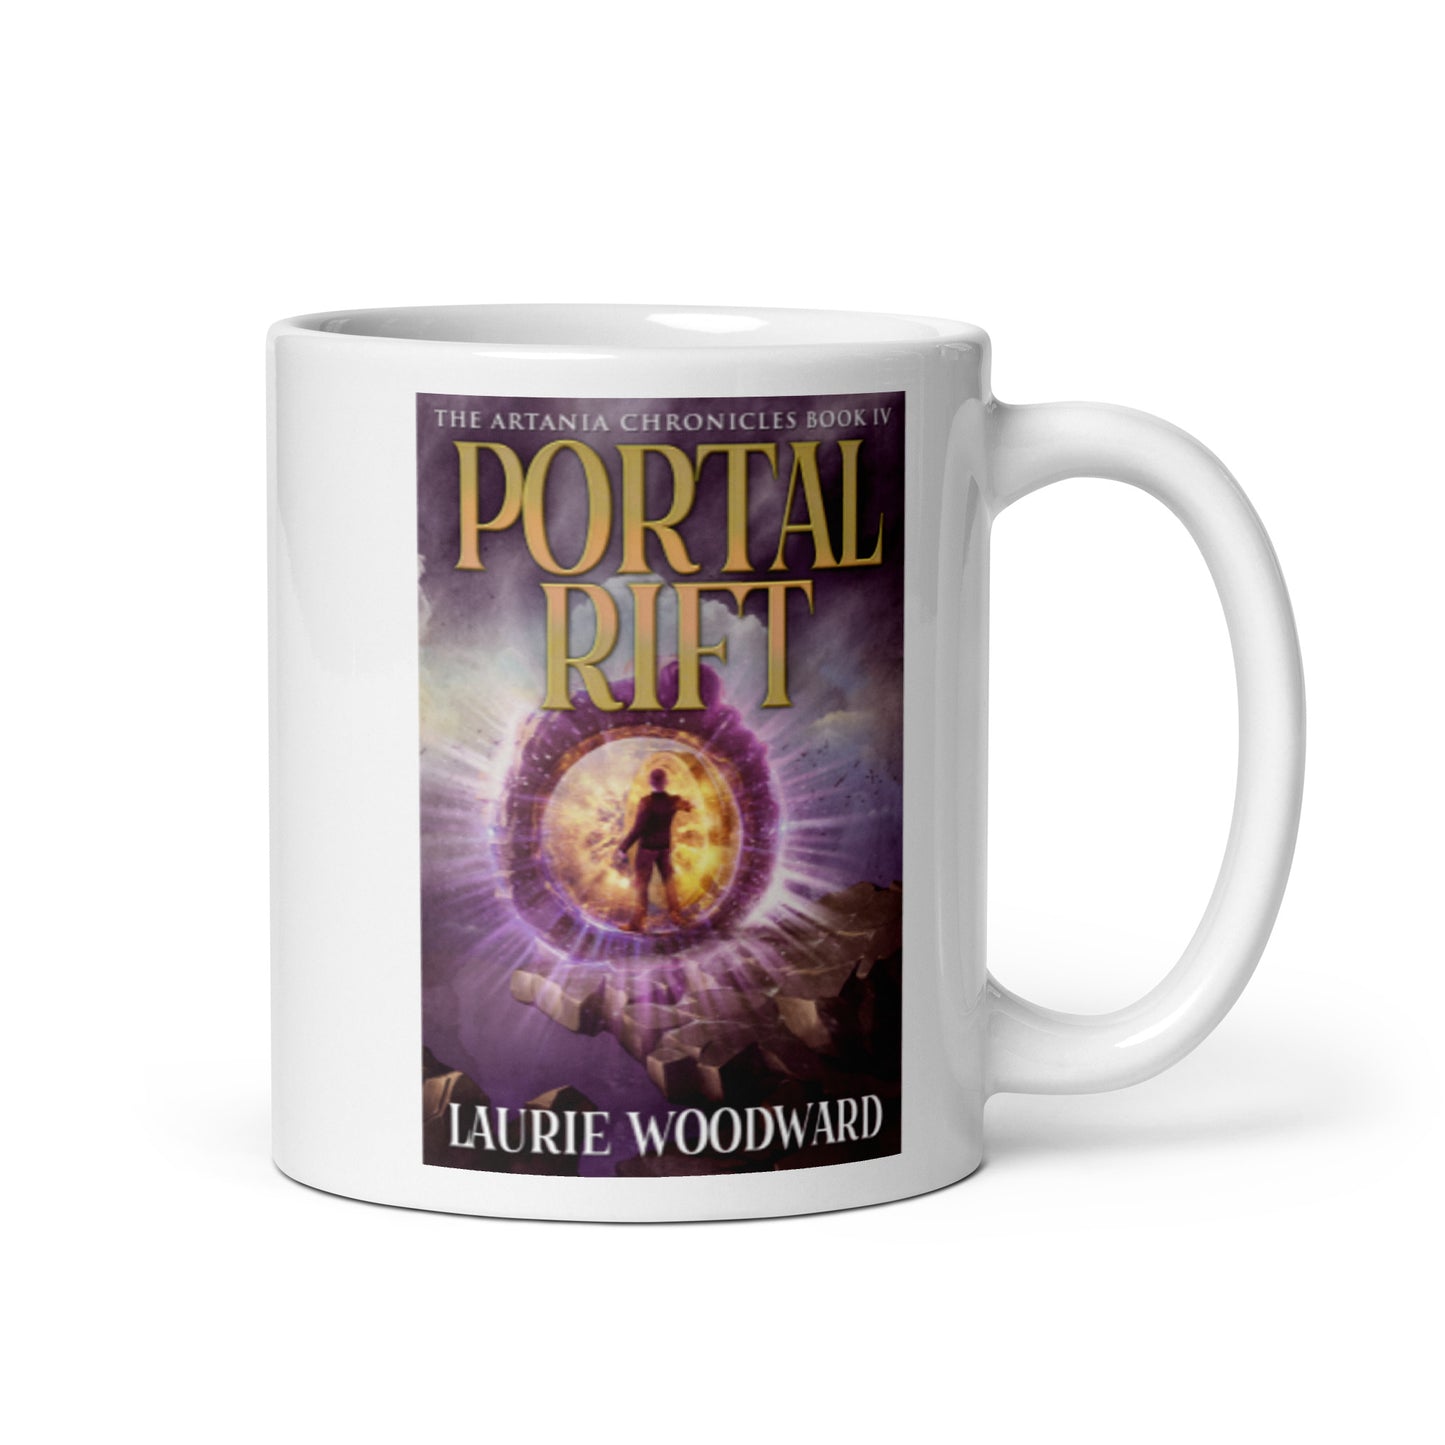 Portal Rift - White Coffee Mug